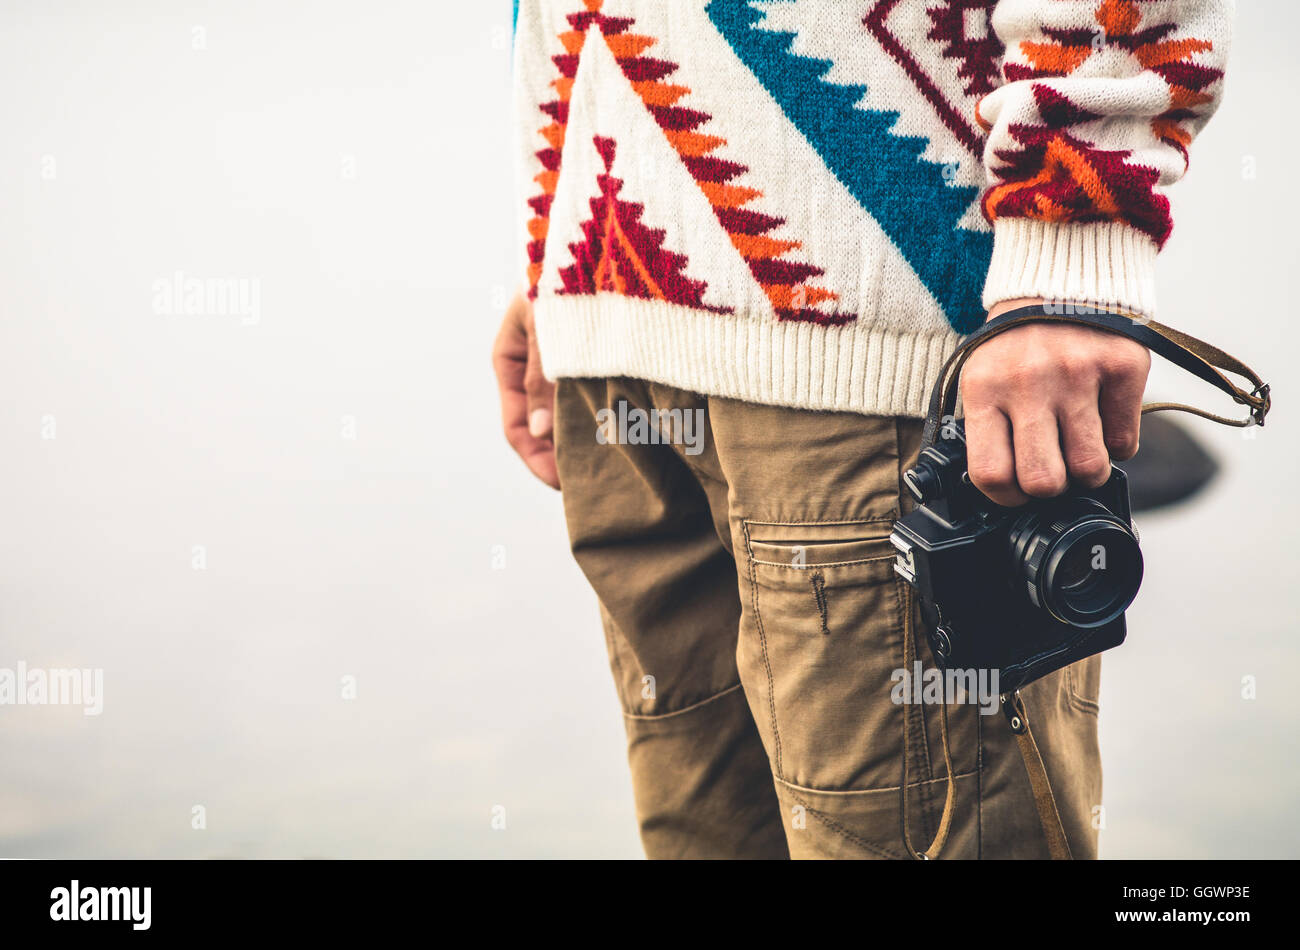 Uomo con retrò fotocamera foto di moda stile di vita viaggio outdoor foggy natura sullo sfondo Foto Stock